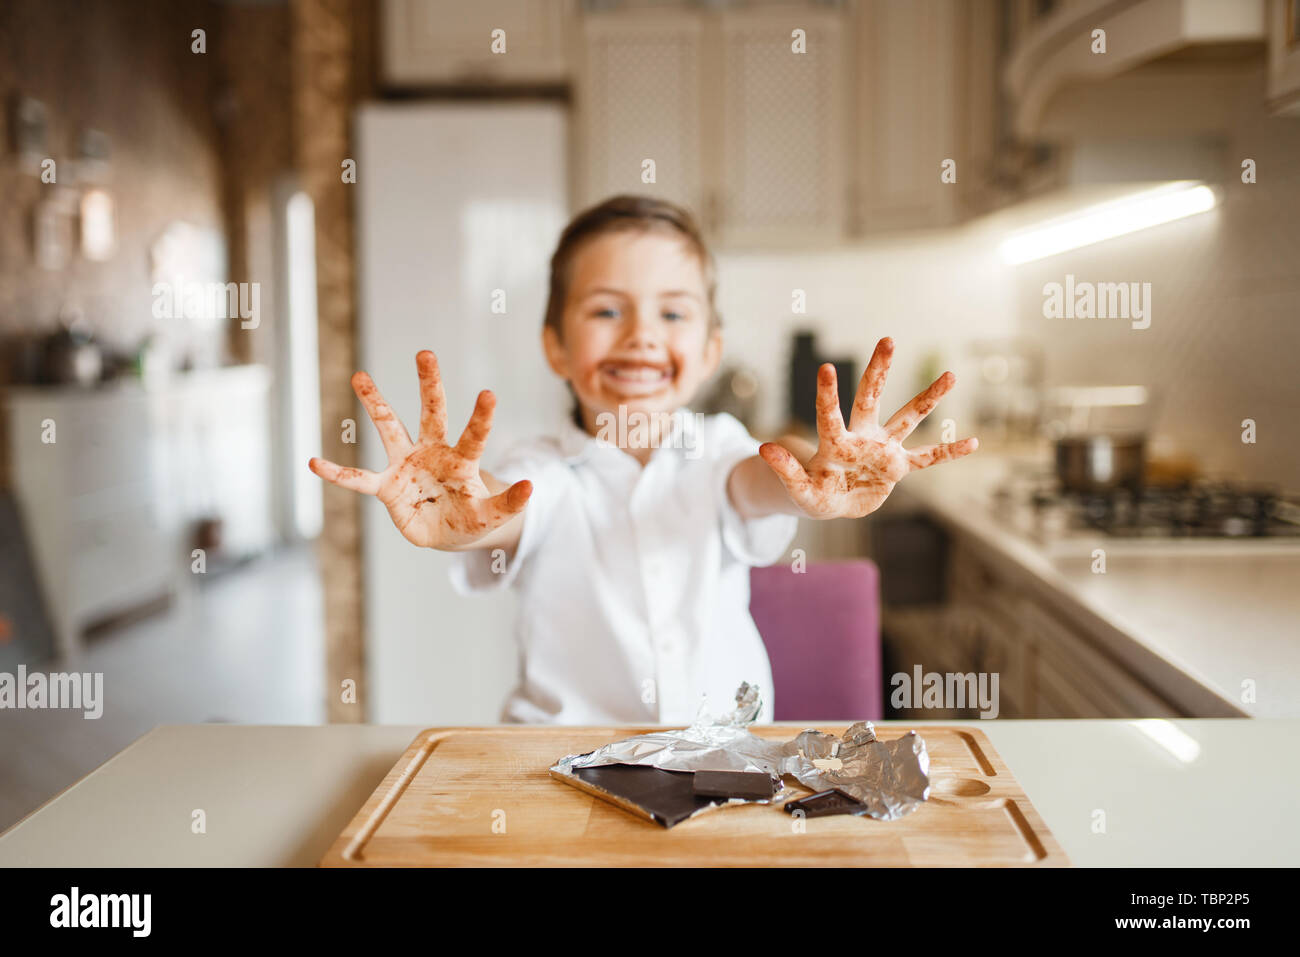 Chico muestra las manos manchadas con chocolate derretido Foto de stock